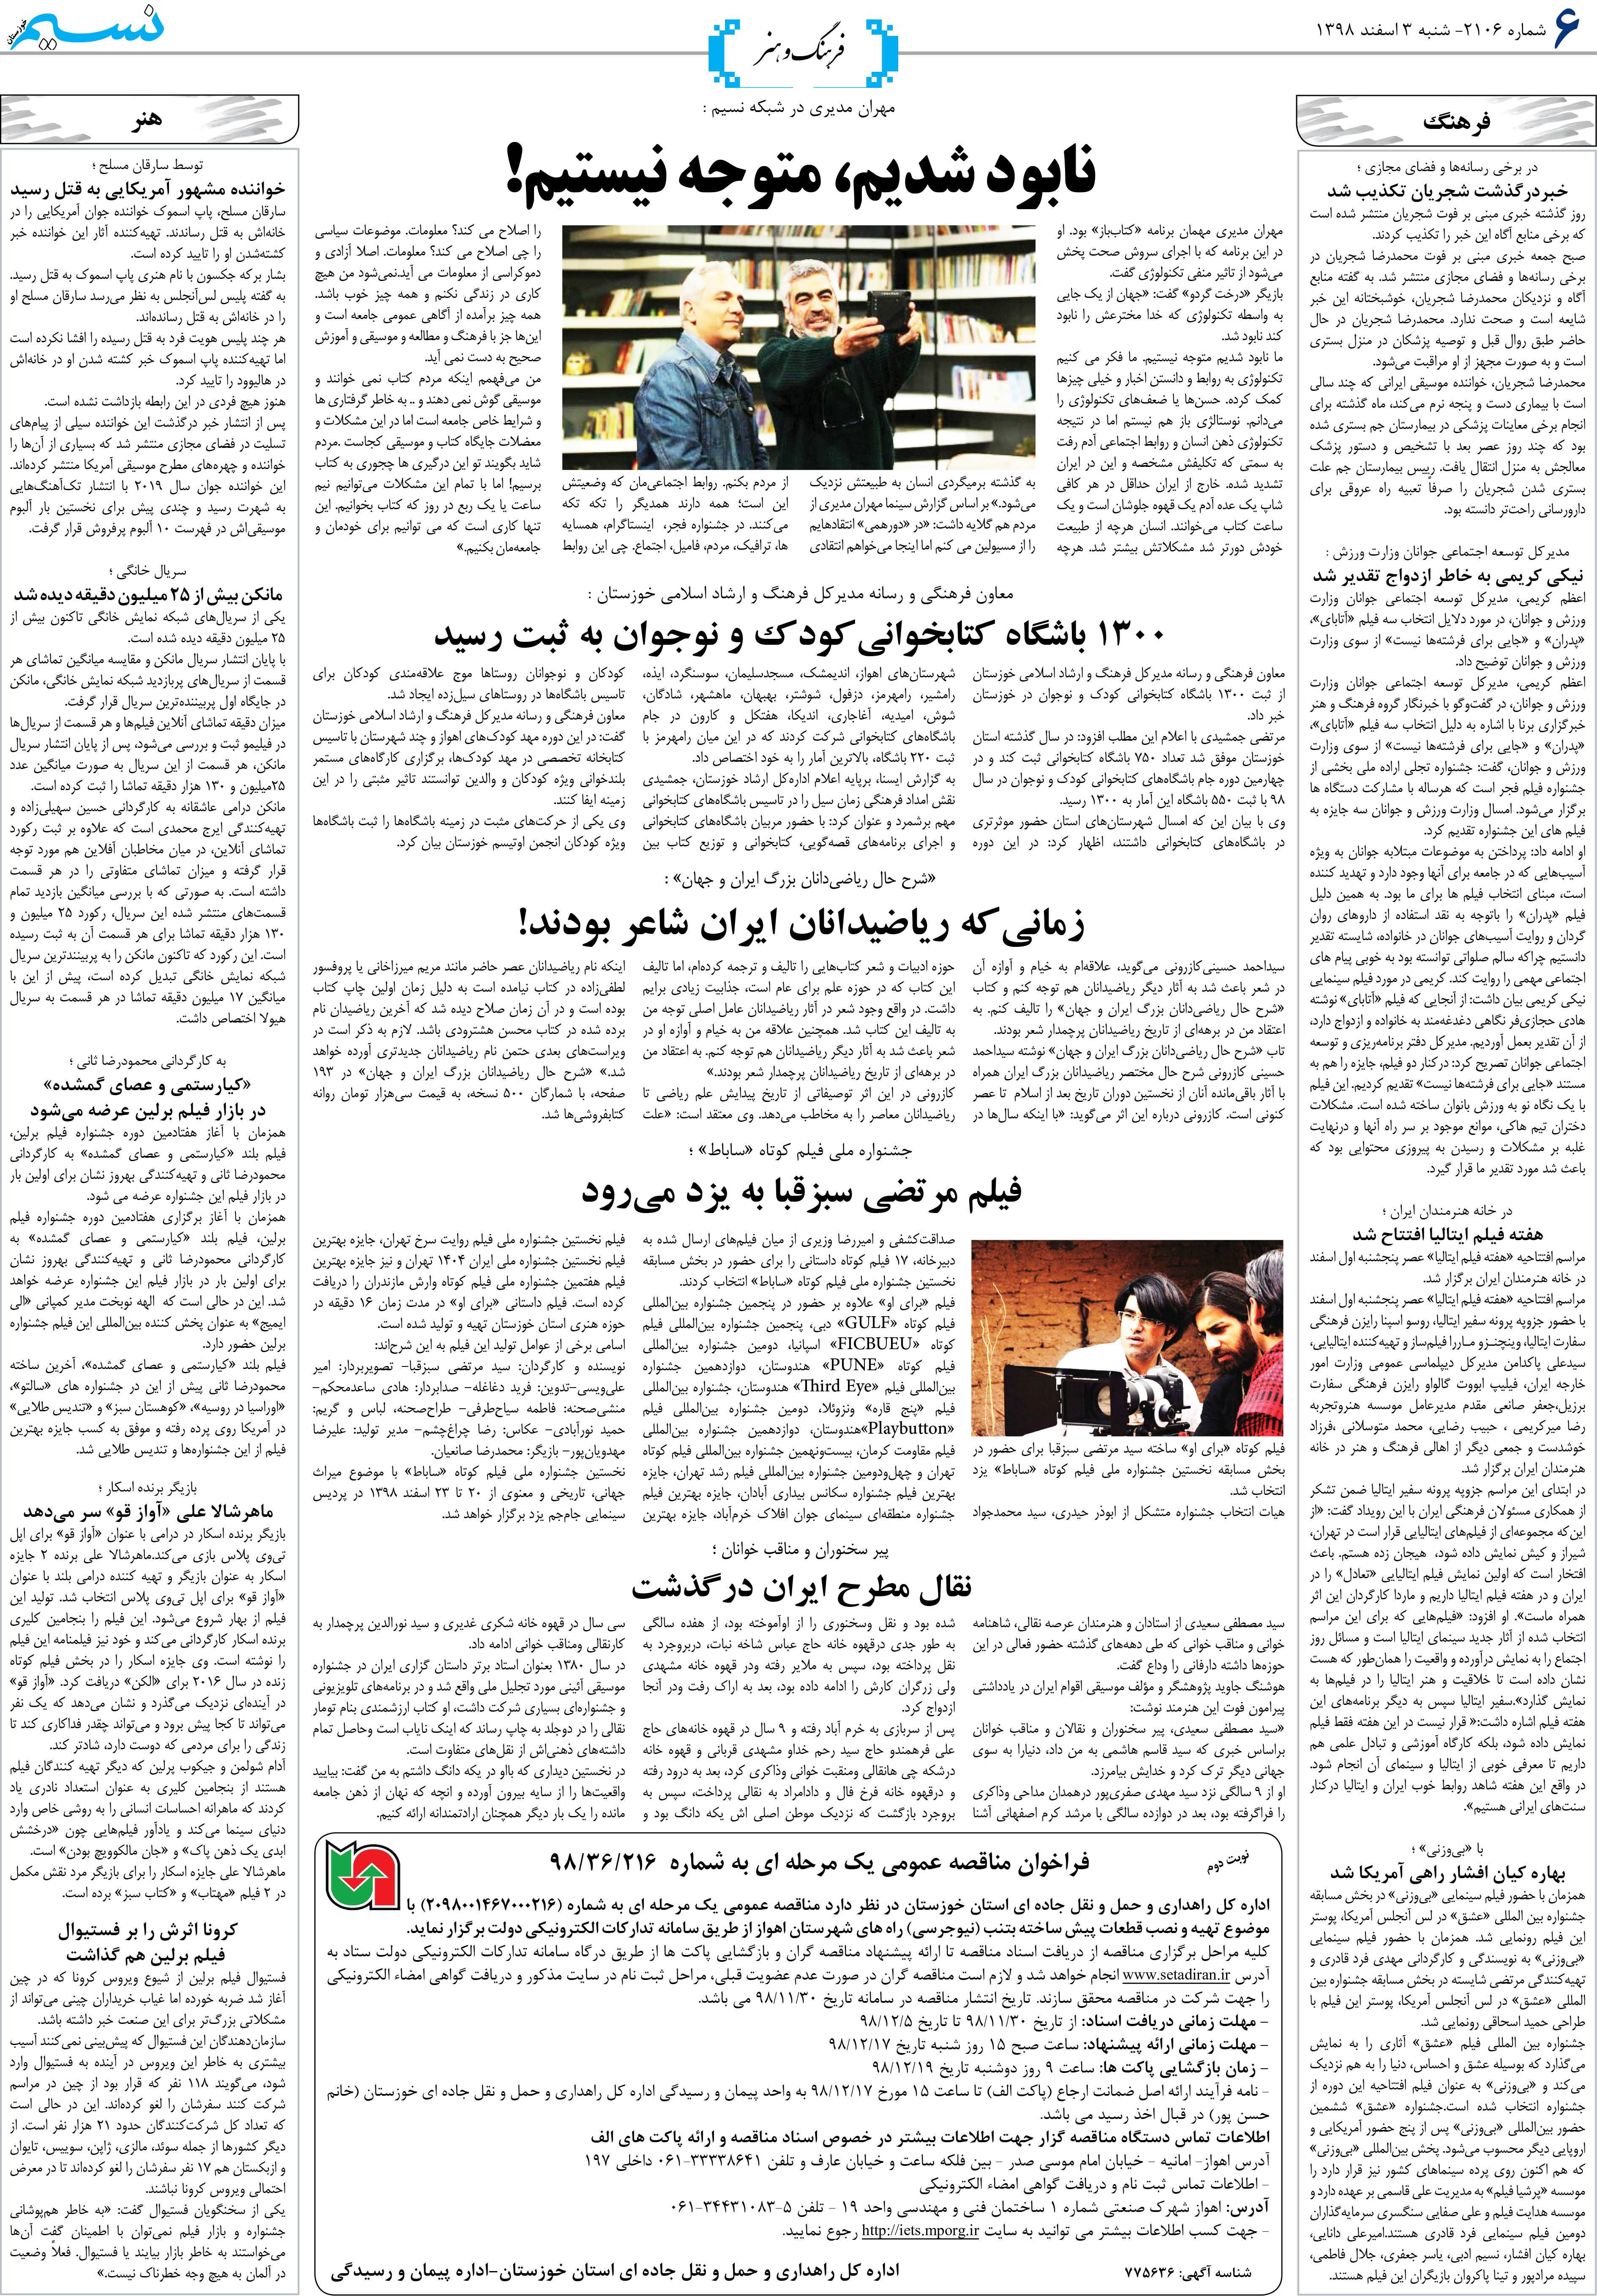 صفحه فرهنگ و هنر روزنامه نسیم شماره 2106